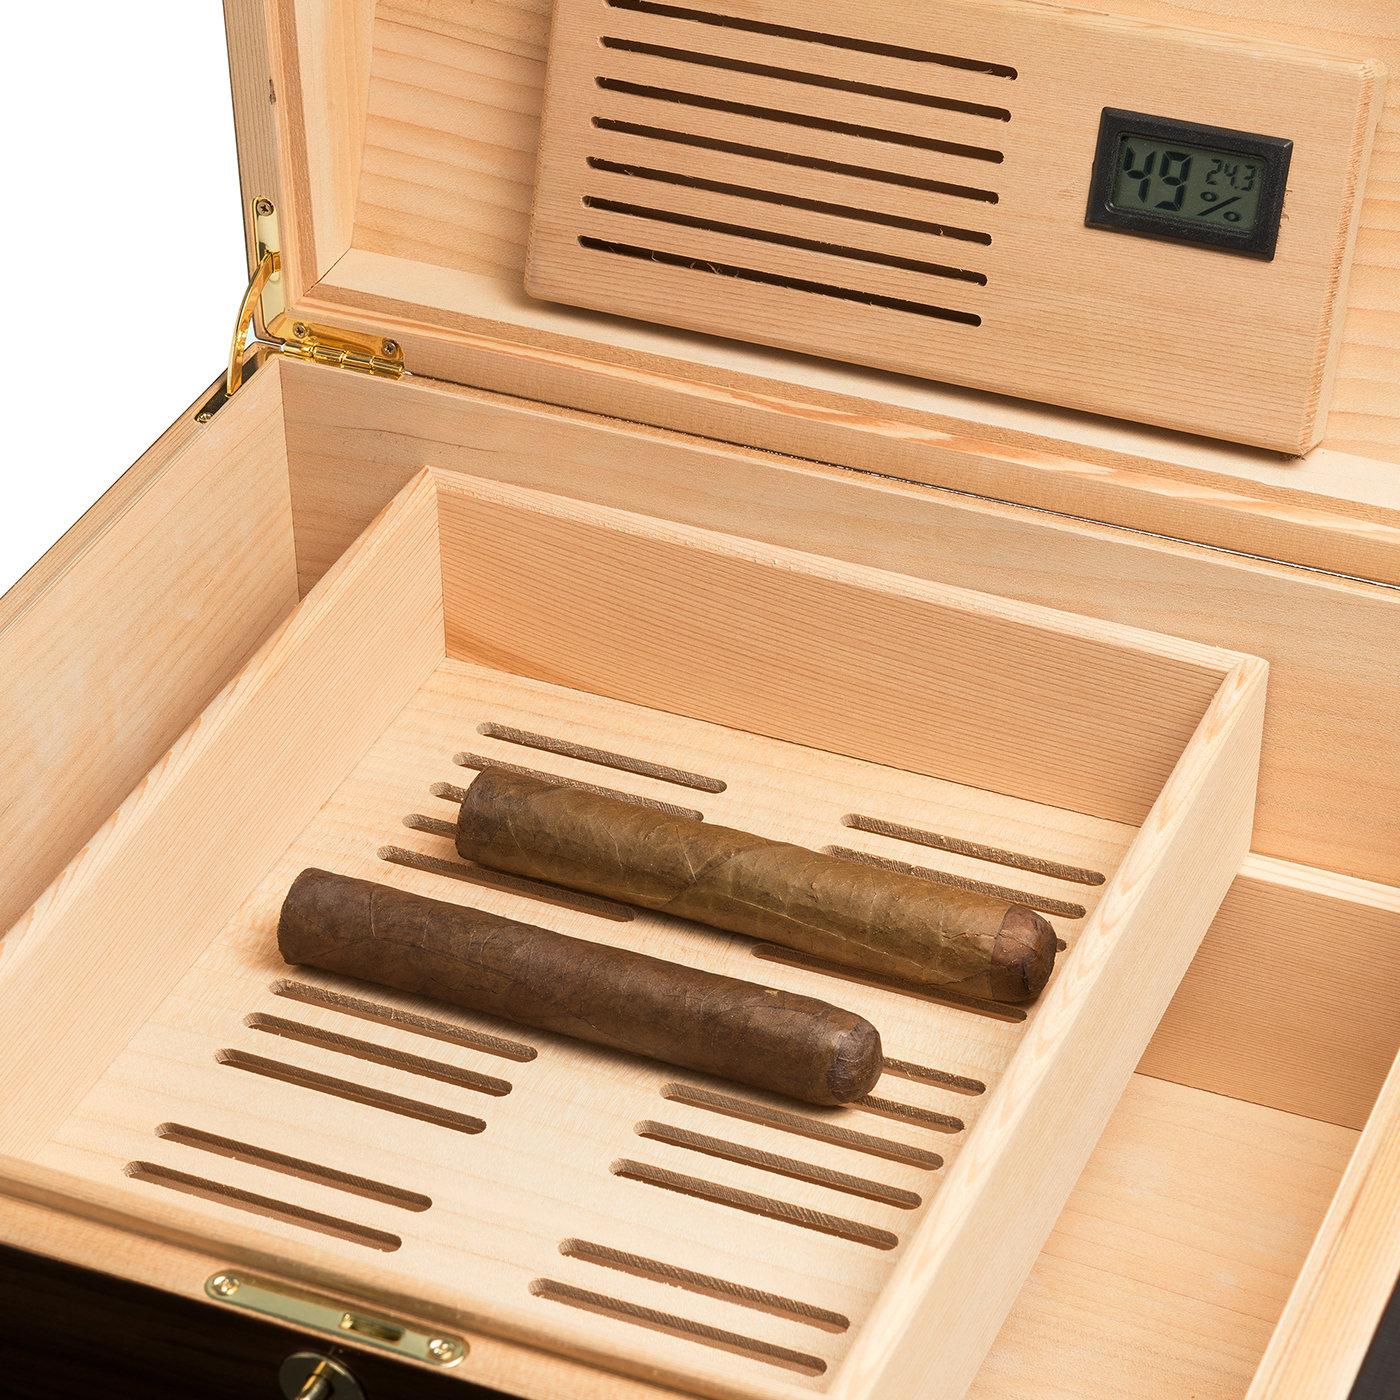 Als elegantes und raffiniertes Sammlerstück setzt dieses Zigarrenetui einen raffinierten Akzent in jeder modernen oder traditionellen Einrichtung. Das perfekte Geschenk für einen Zigarrenliebhaber ist die klassische Silhouette aus handgefertigtem